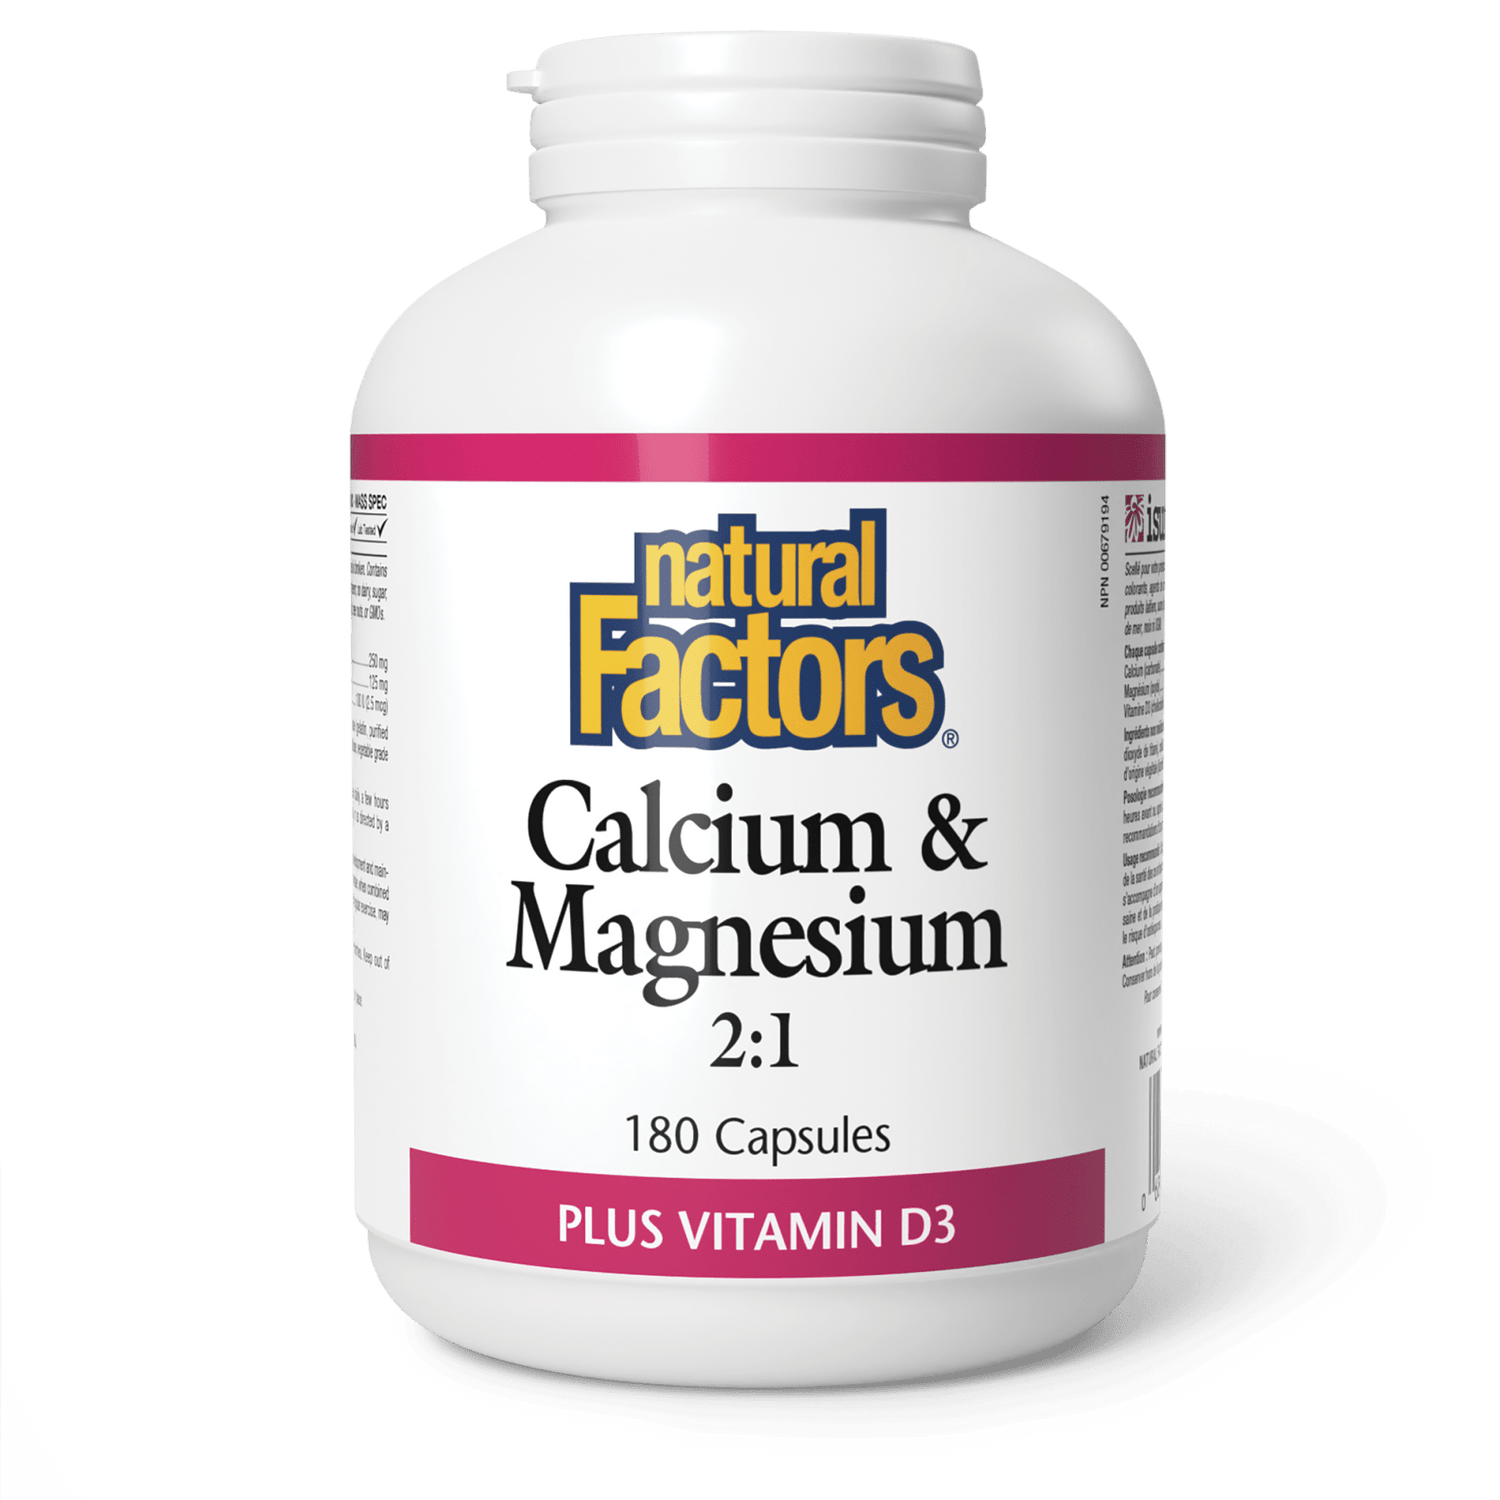 Calcium & Magnesium 2:1 Plus Vitamin D3, Natural Factors|v|image|1626